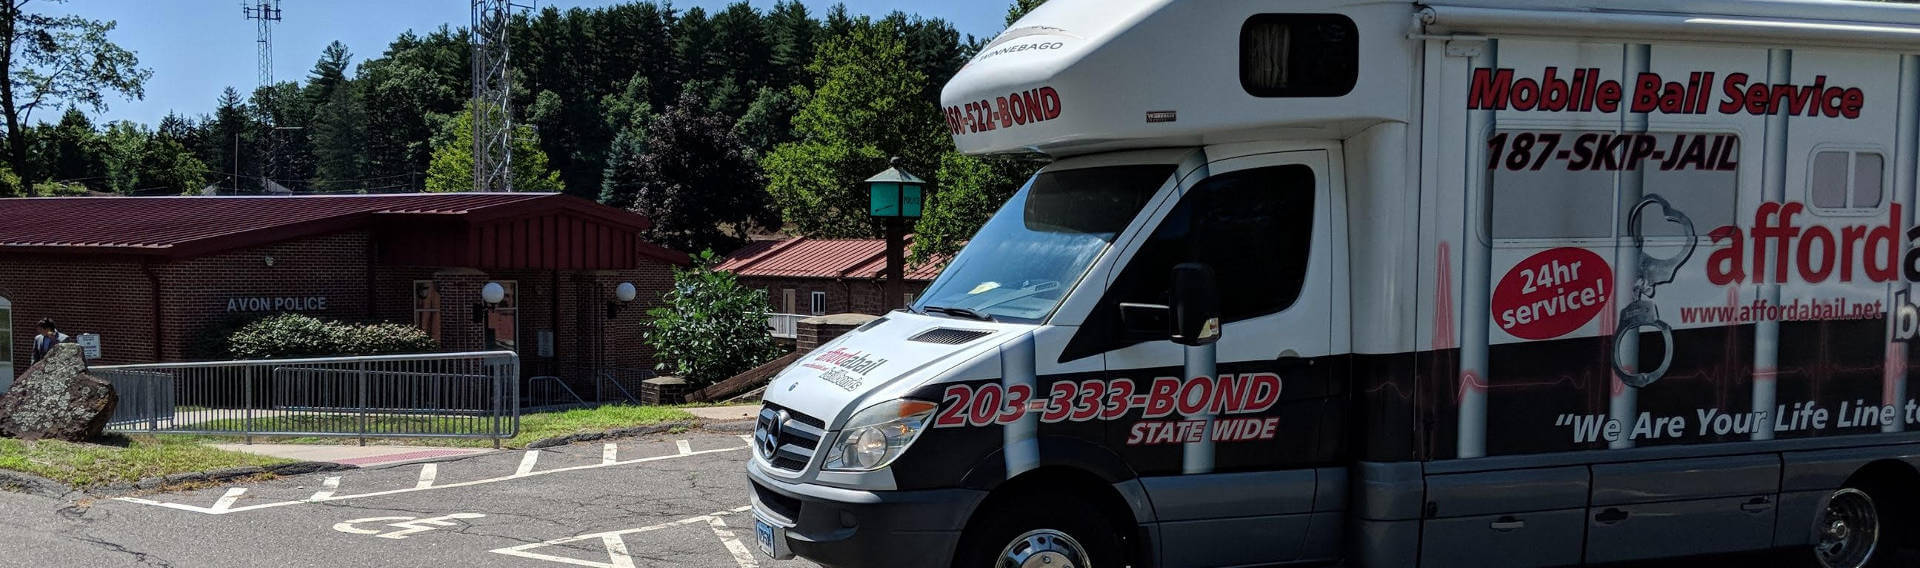 Mobile bail bonds service in Avon, CT